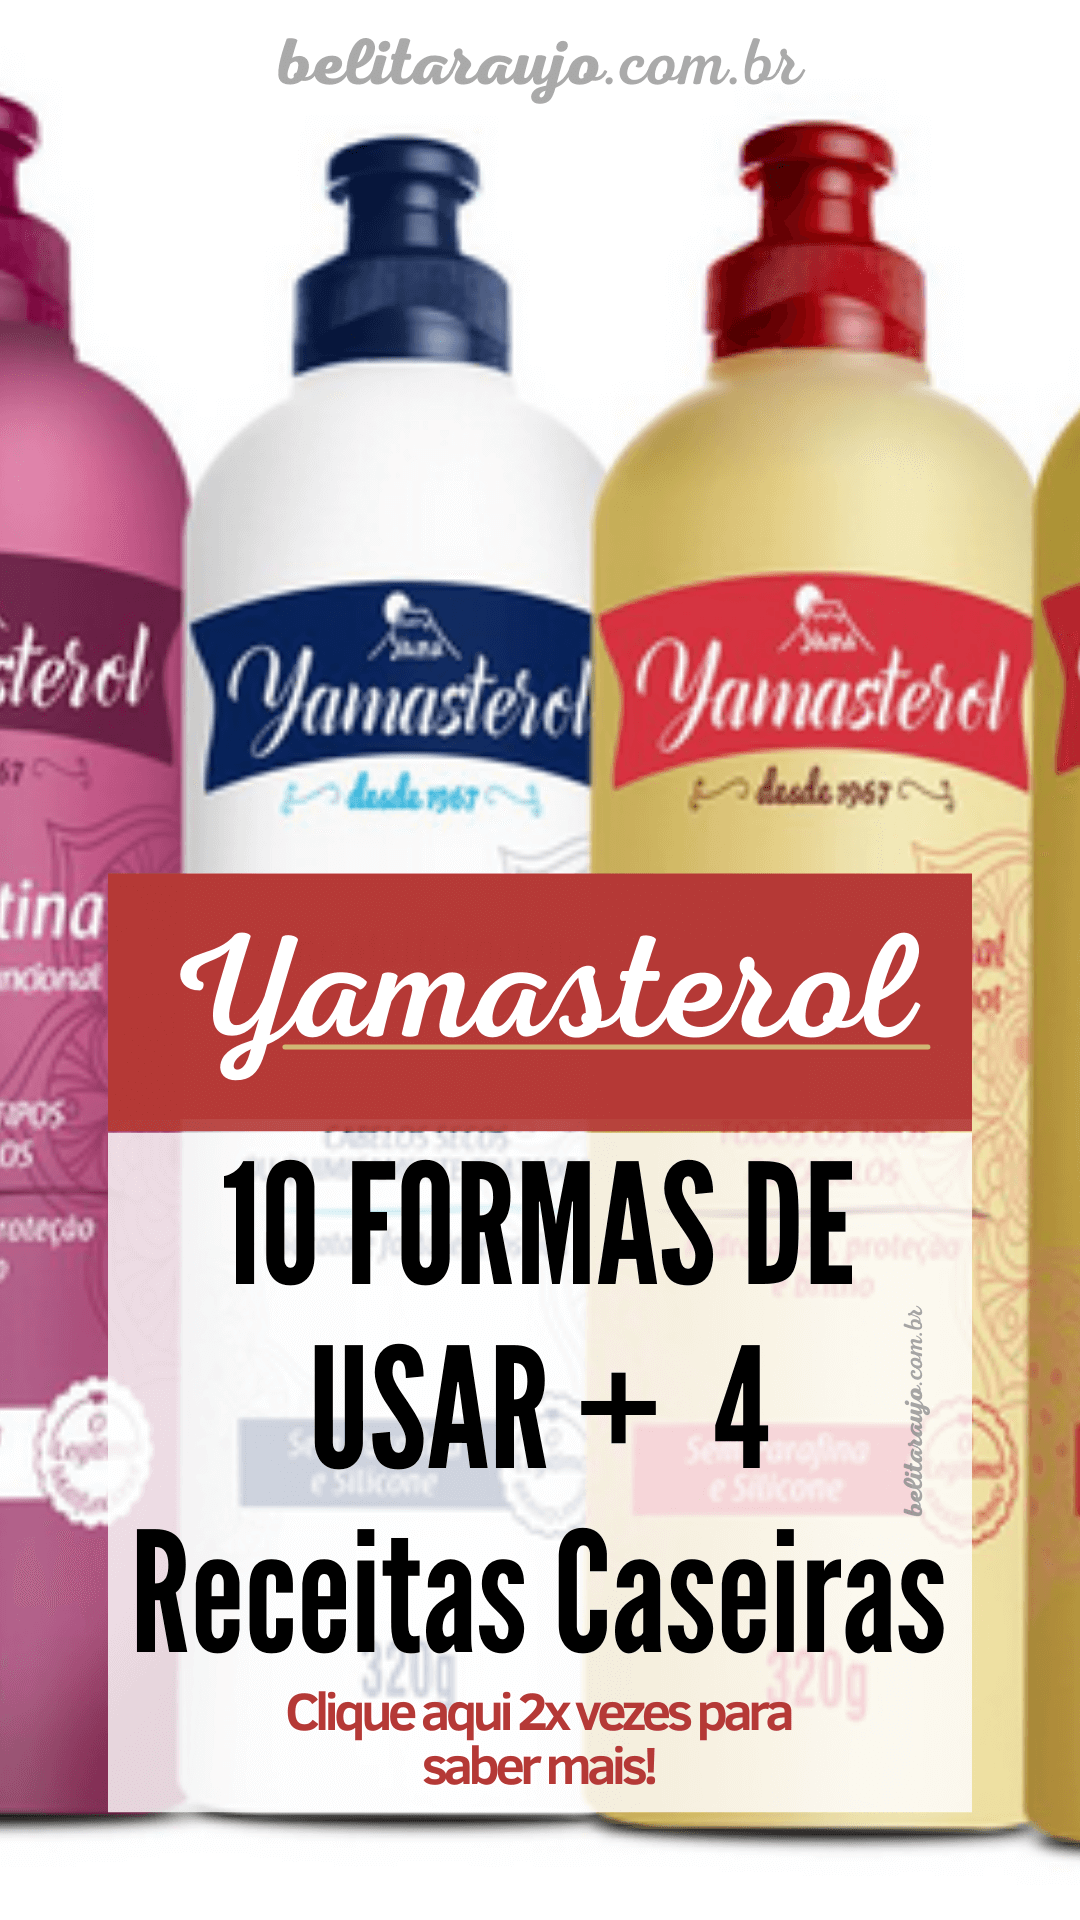 Yamasterol : 10 FORMAS DE USAR com mais 4 Receitas Caseiras